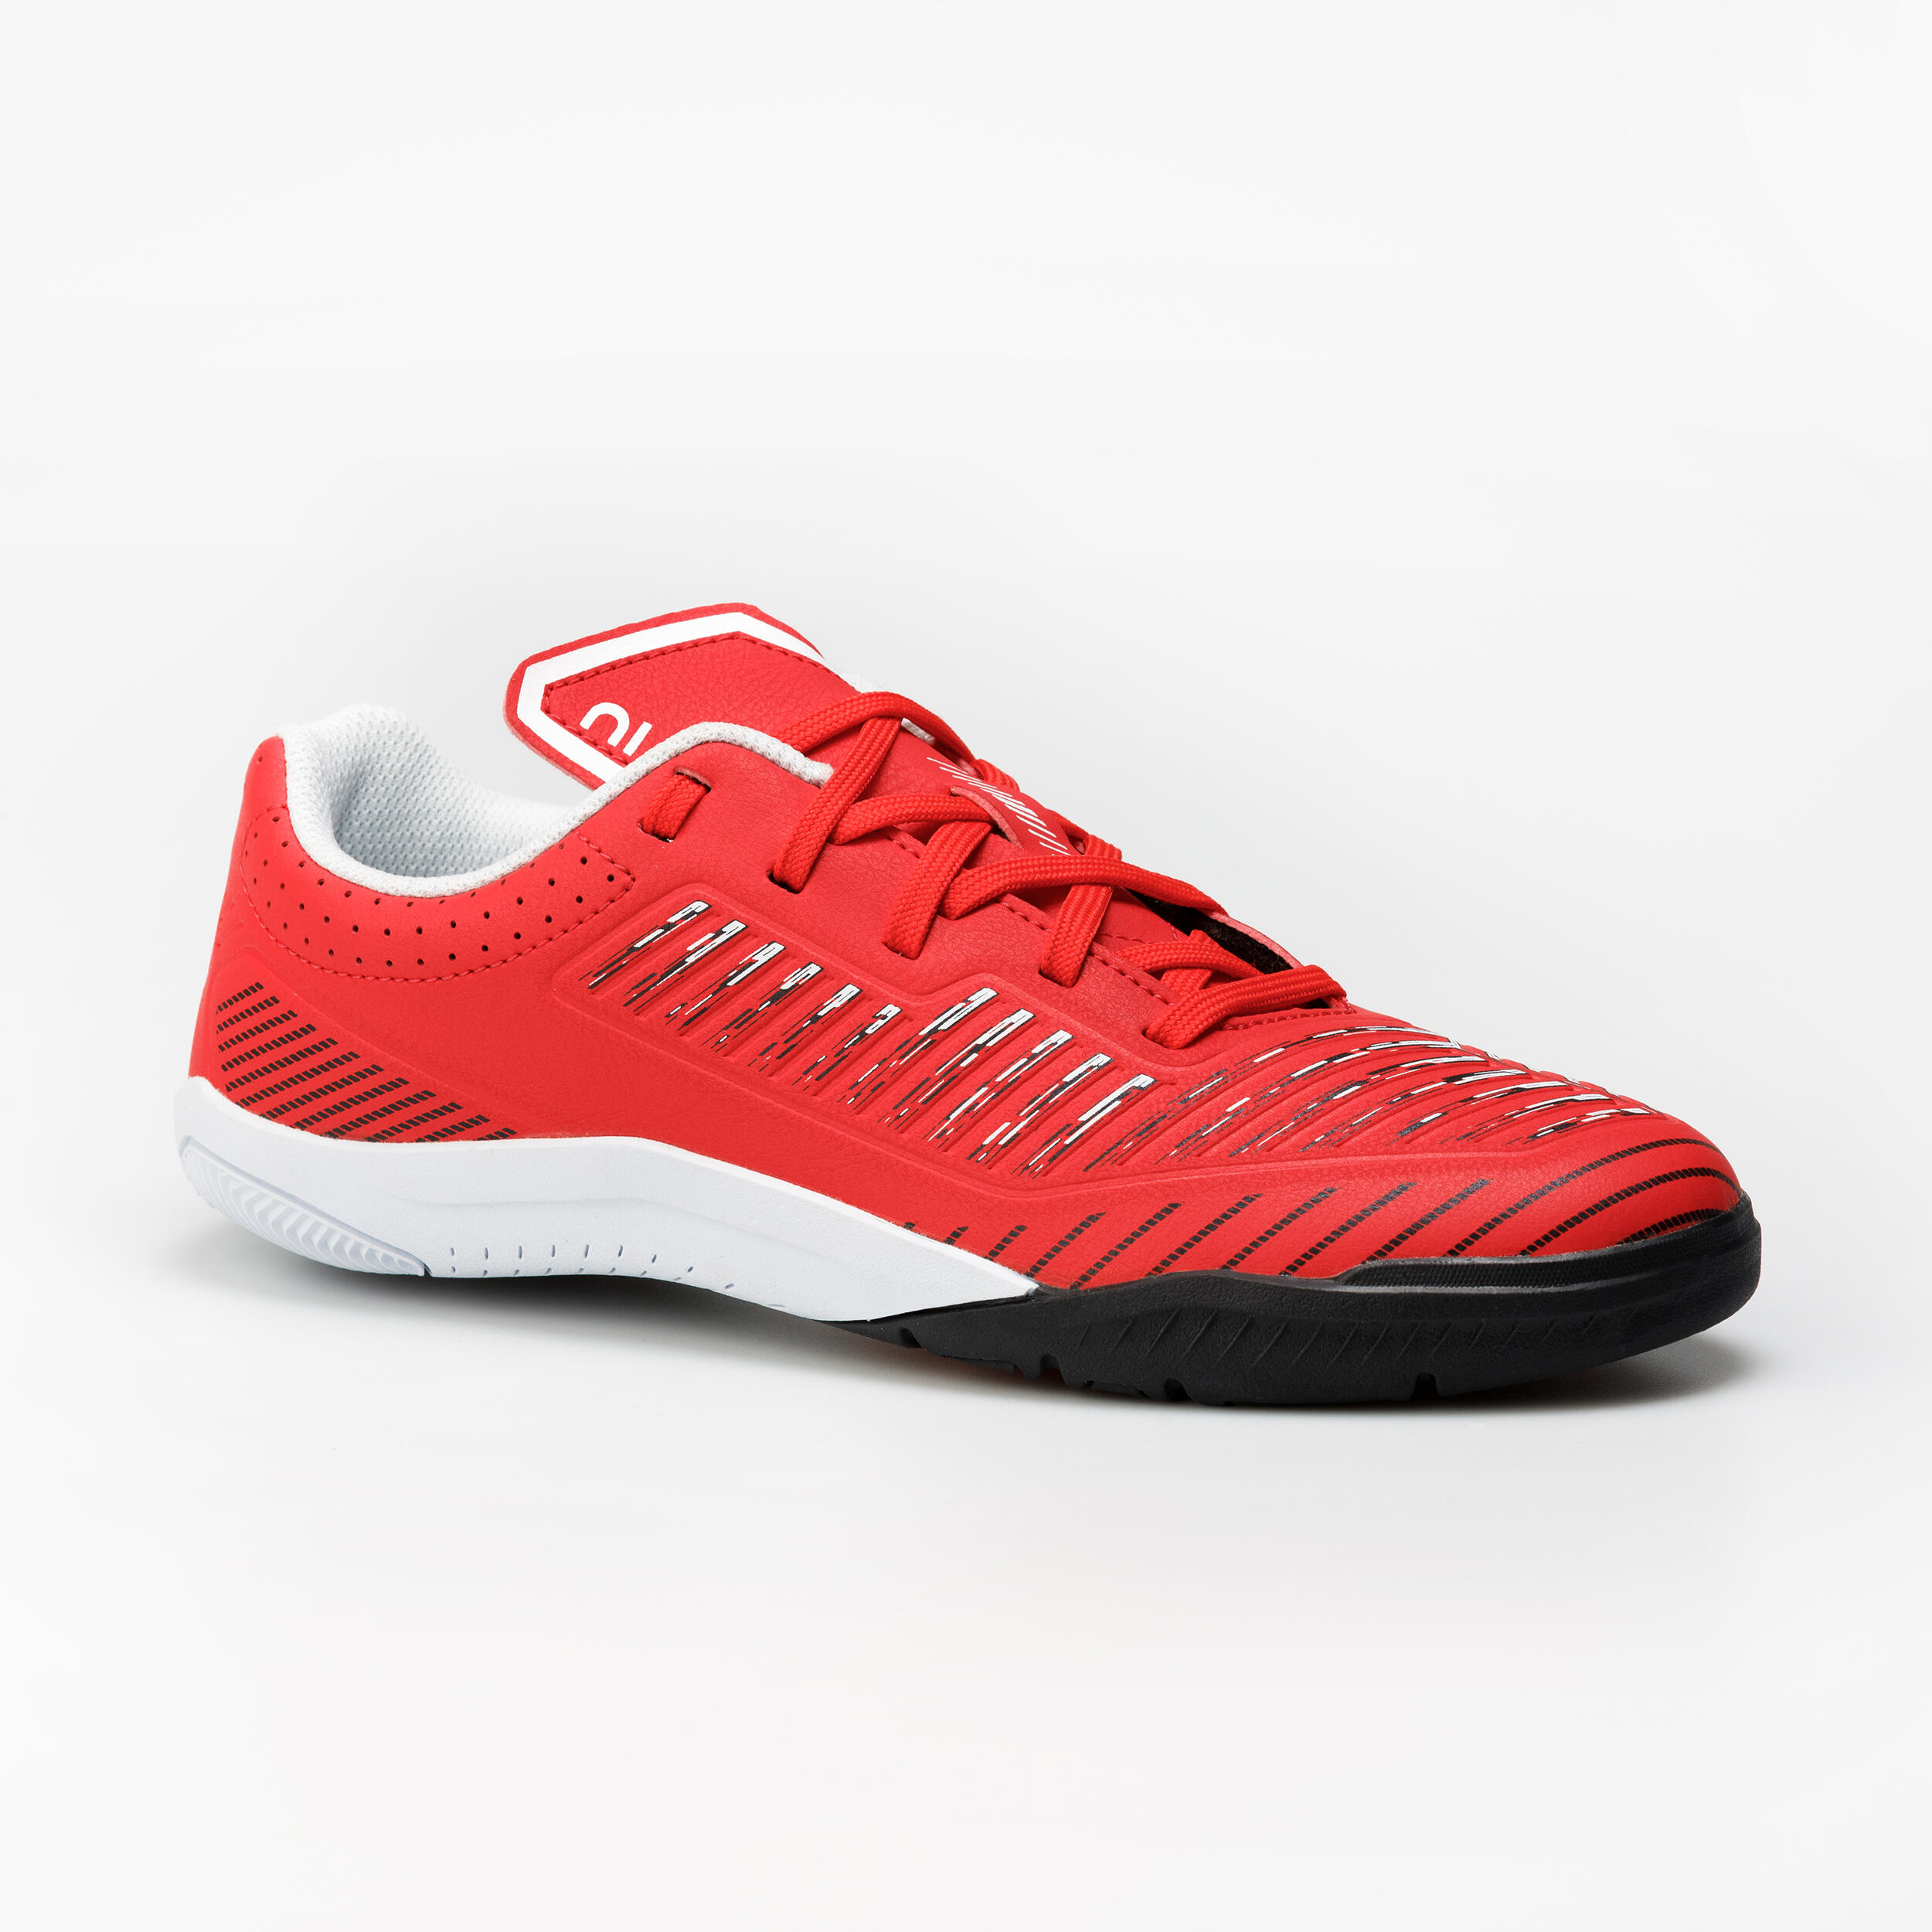 Kids' Indoor Soccer Shoes - Ginka 500 Red/Black - KIPSTA